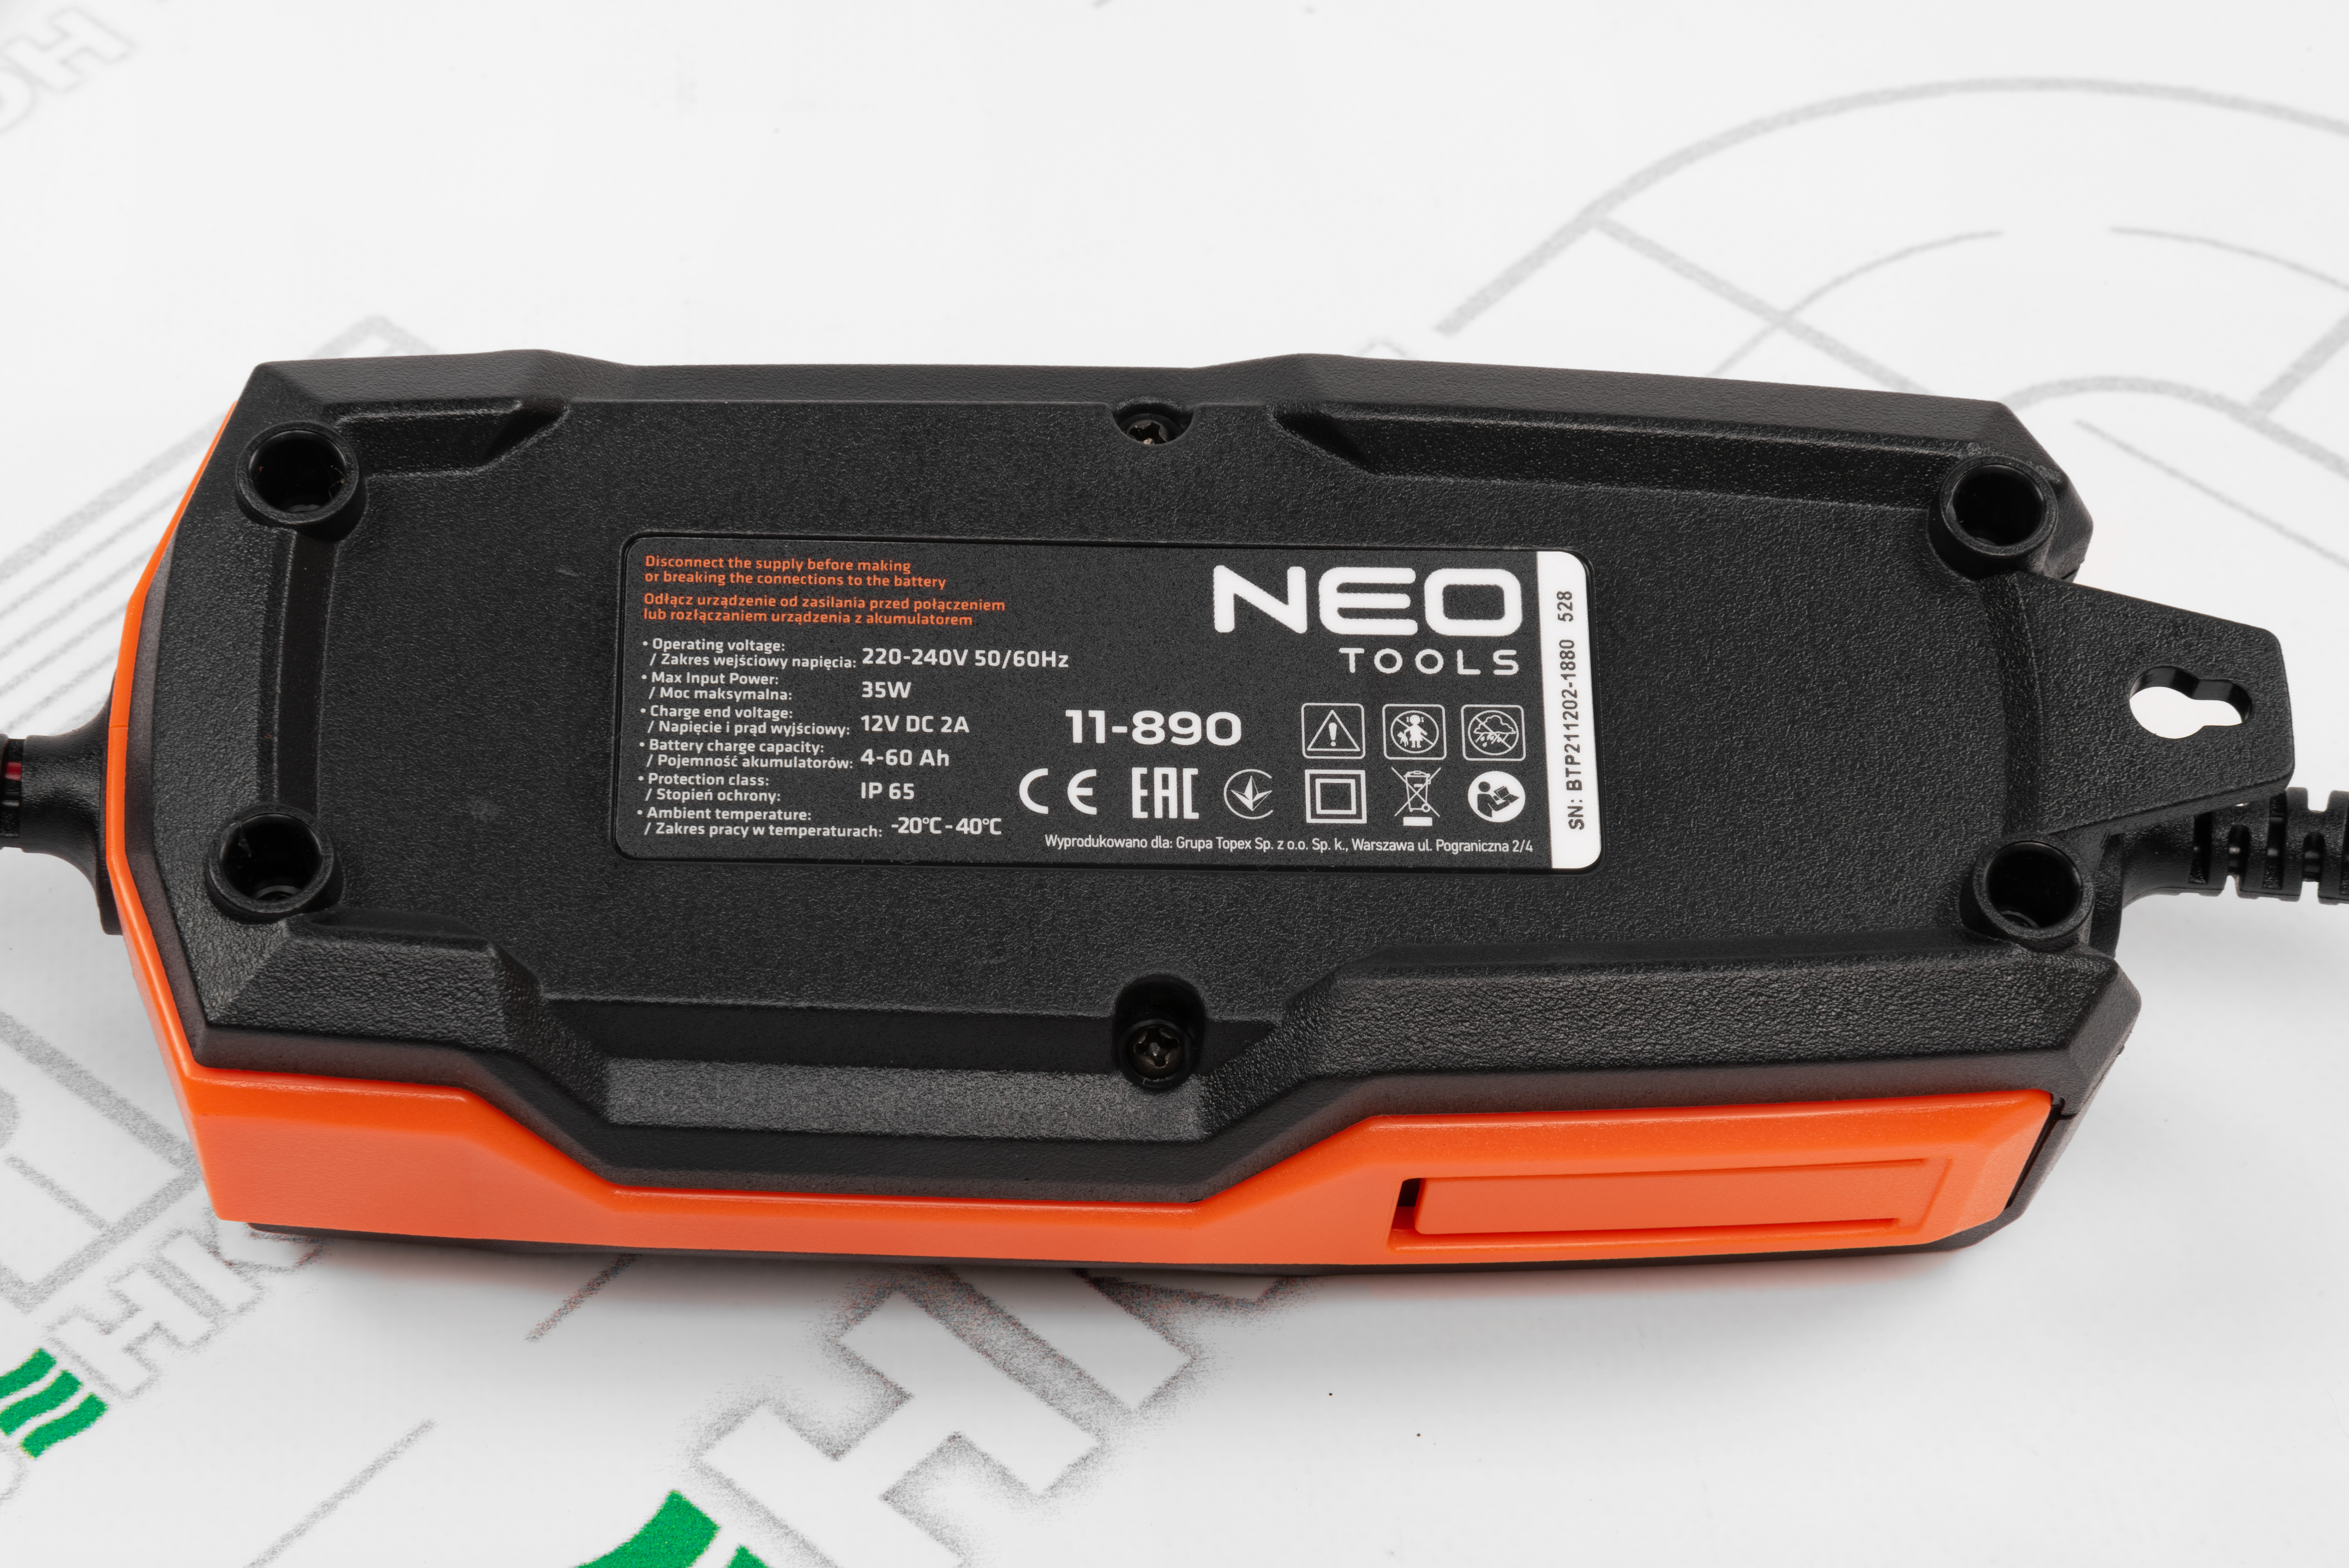 Автомобильно зарядное устройство Neo Tools 11-890 отзывы - изображения 5